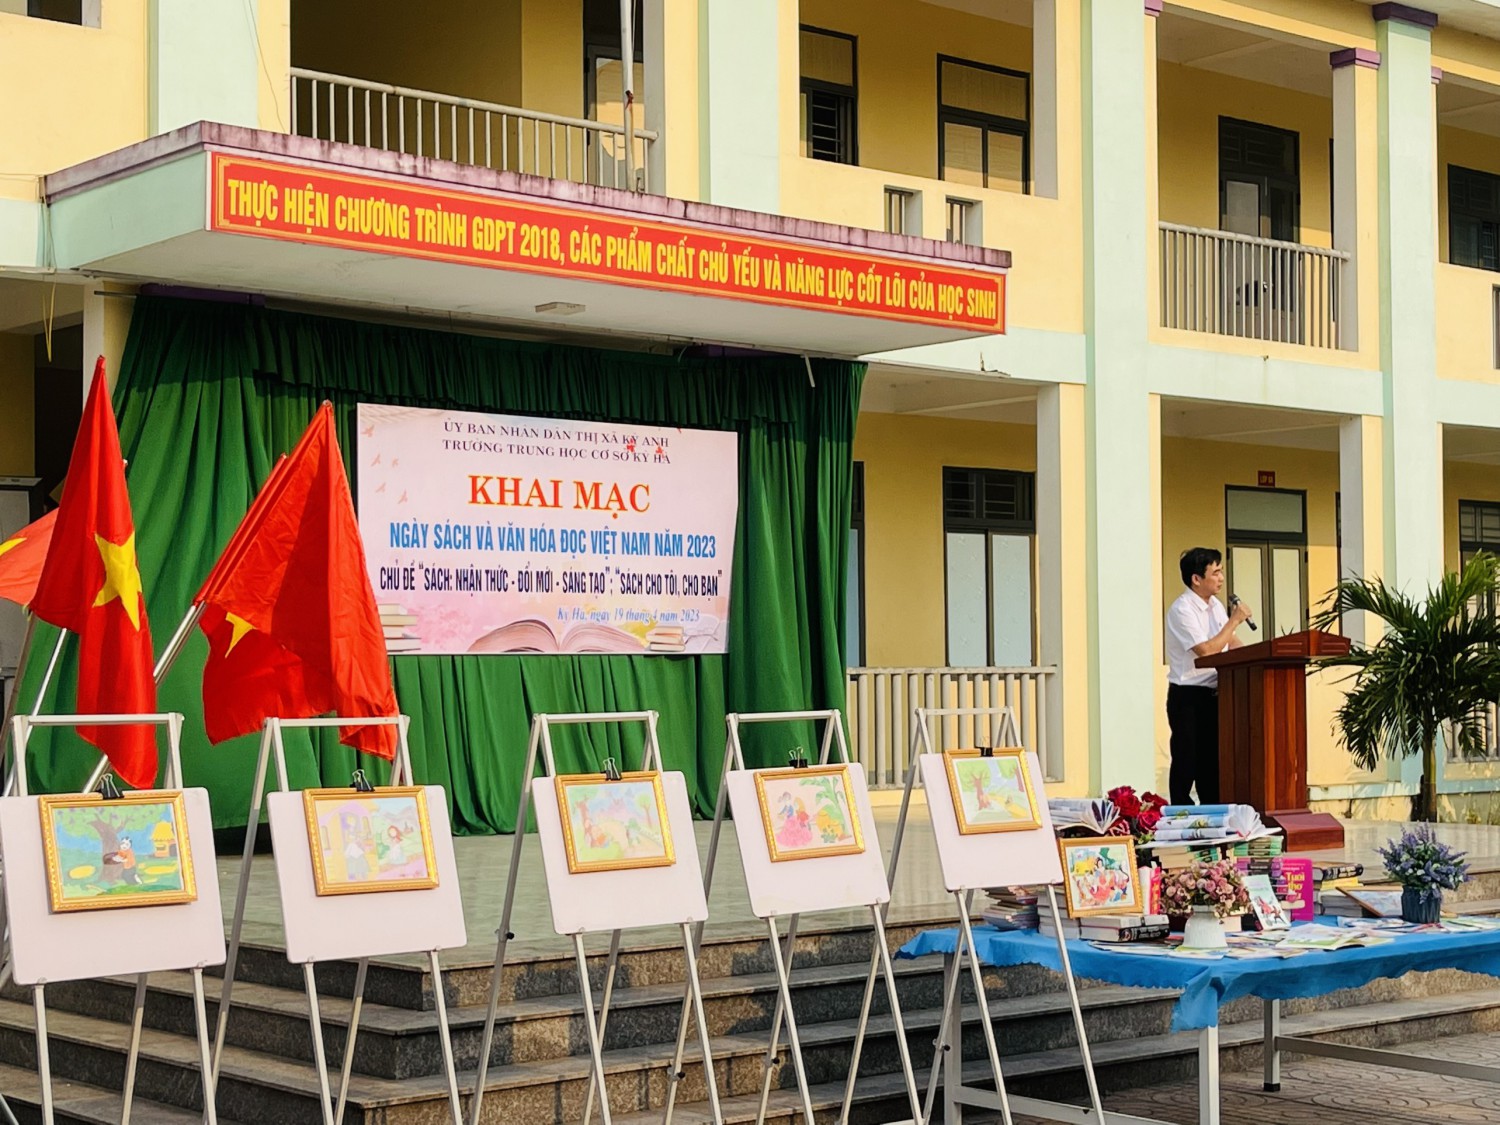 Thầy giáo Nguyễn Văn Trung- Phó hiệu trưởng nhà trường khai mạc buổi lễ